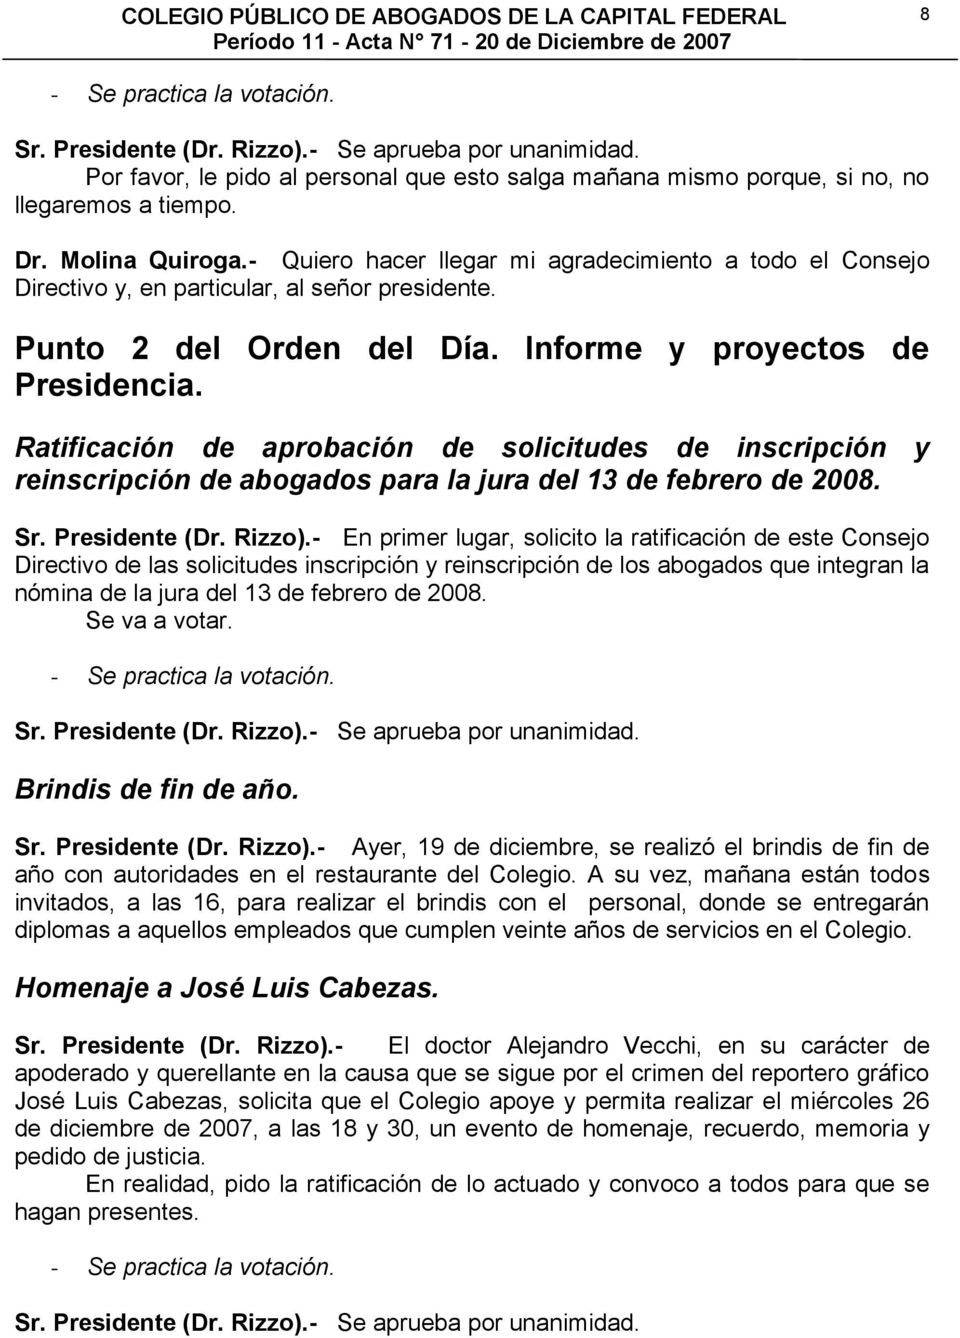 Ratificación de aprobación de solicitudes de inscripción y reinscripción de abogados para la jura del 13 de febrero de 2008. Sr. Presidente (Dr. Rizzo).